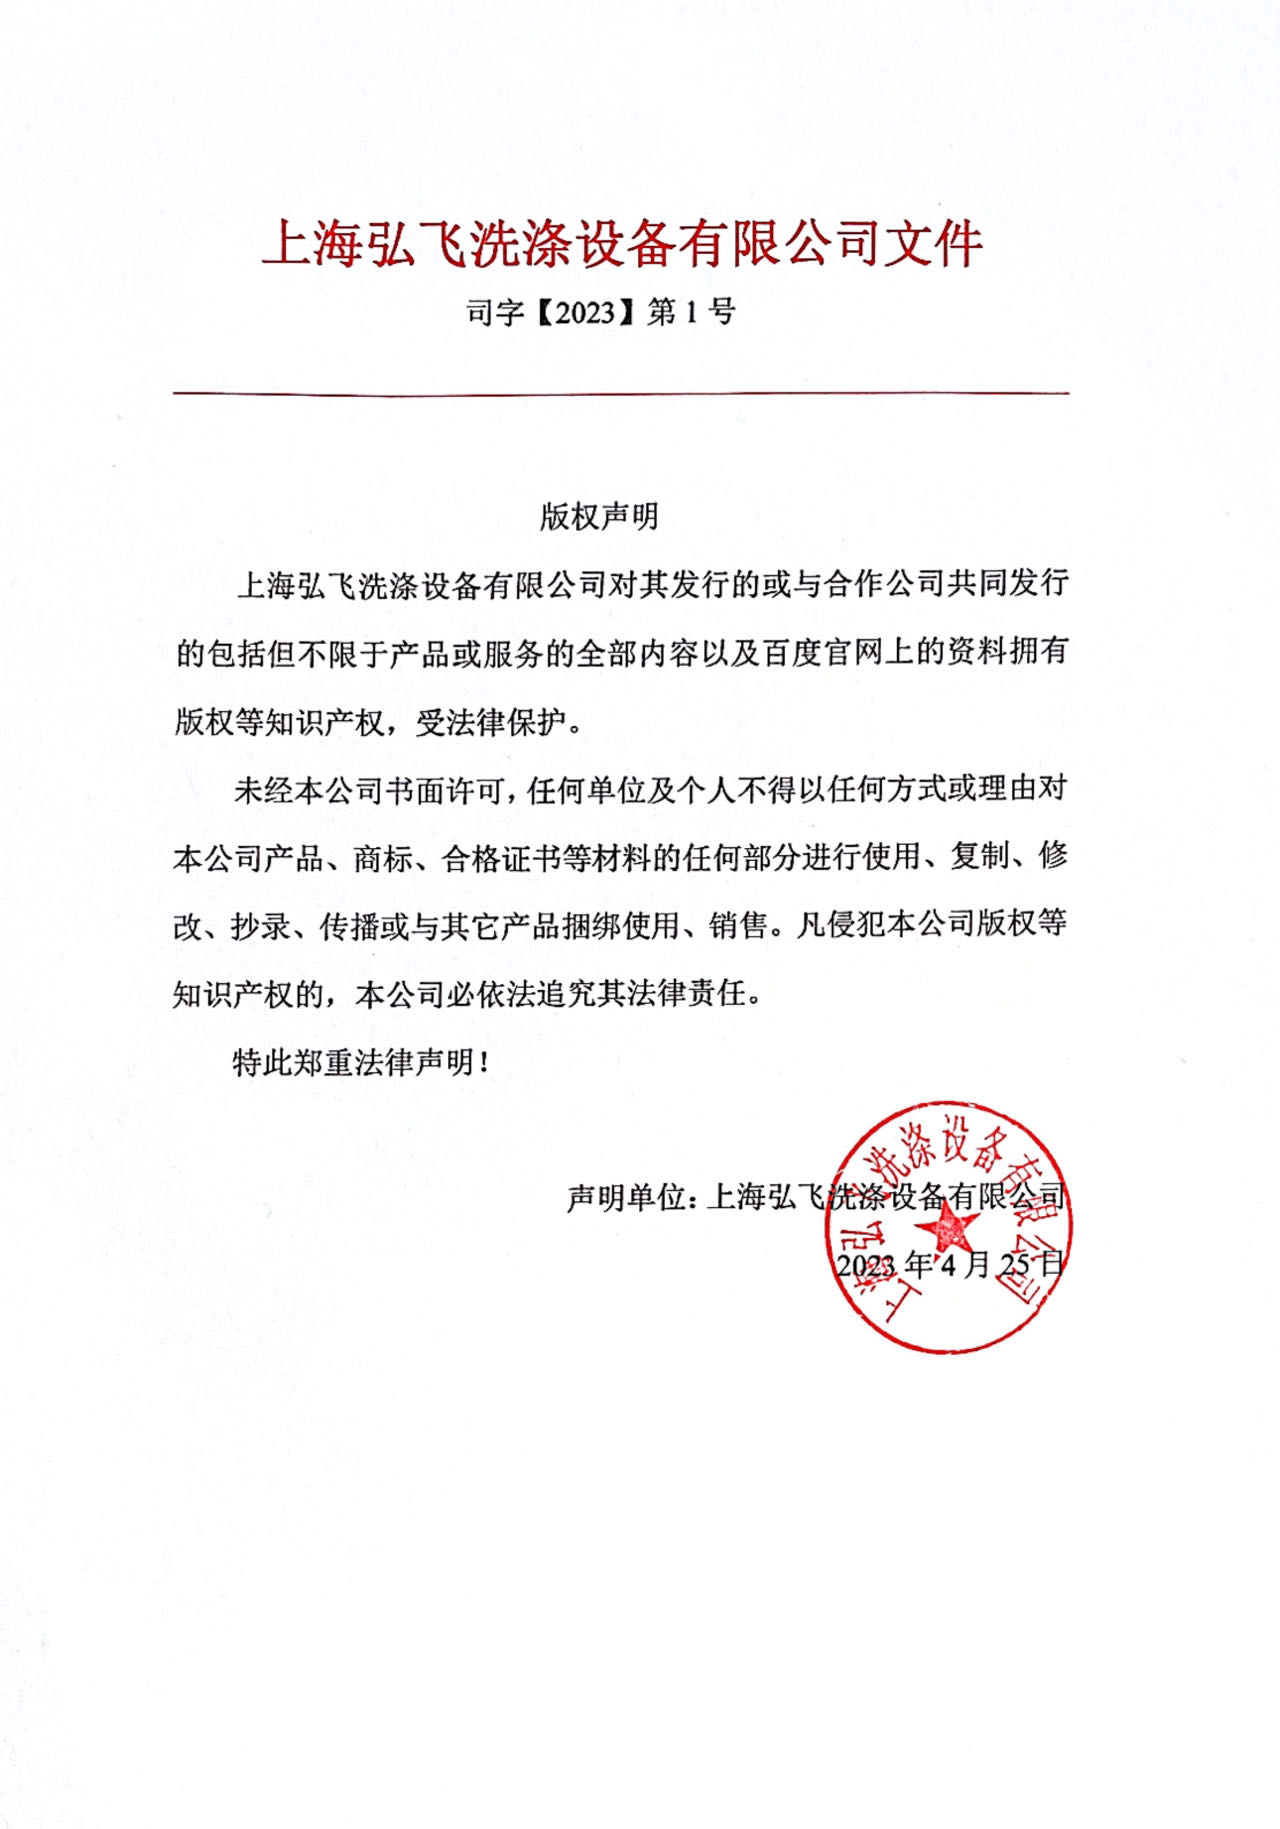 上海弘飞洗涤设备有限公司—版权声明